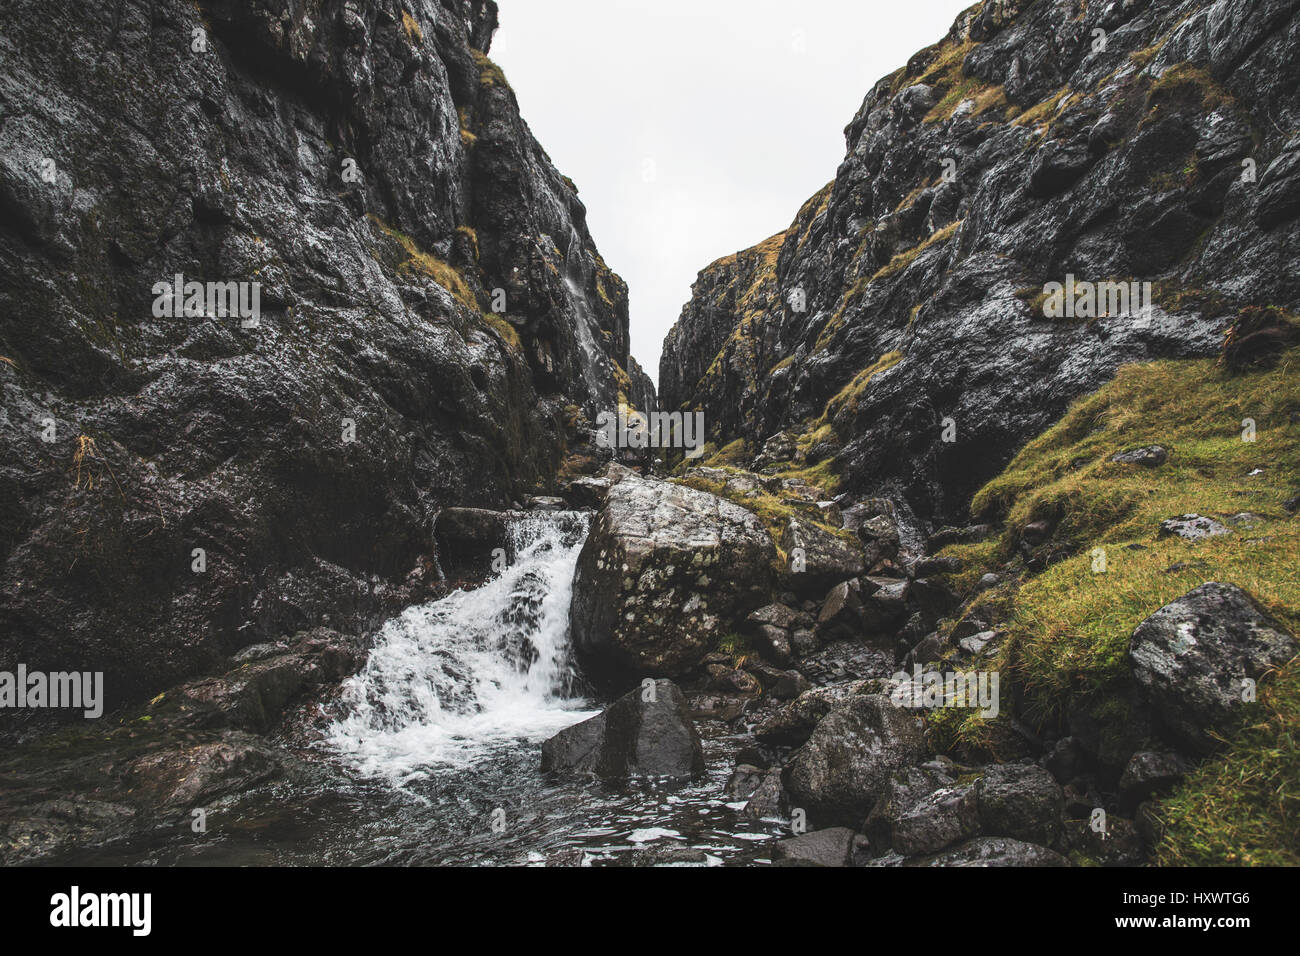 Rocky landscape in the Faroe Islands. Stock Photo